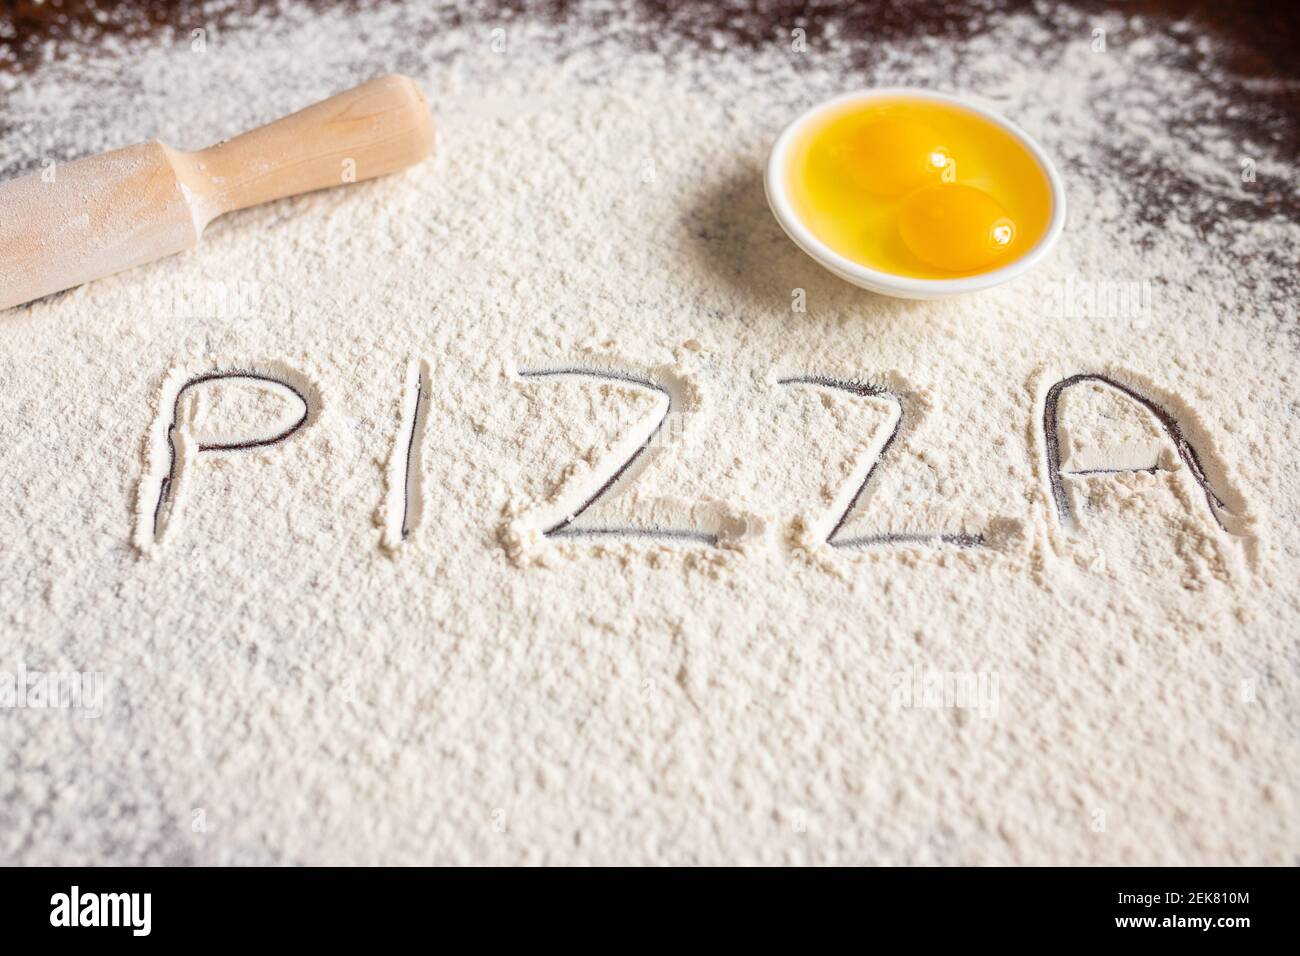 L'iscrizione Pizza su farina spruzzata, disegnata su fondo di legno, spilla e uova. Ricette di cottura. . Foto di alta qualità Foto Stock